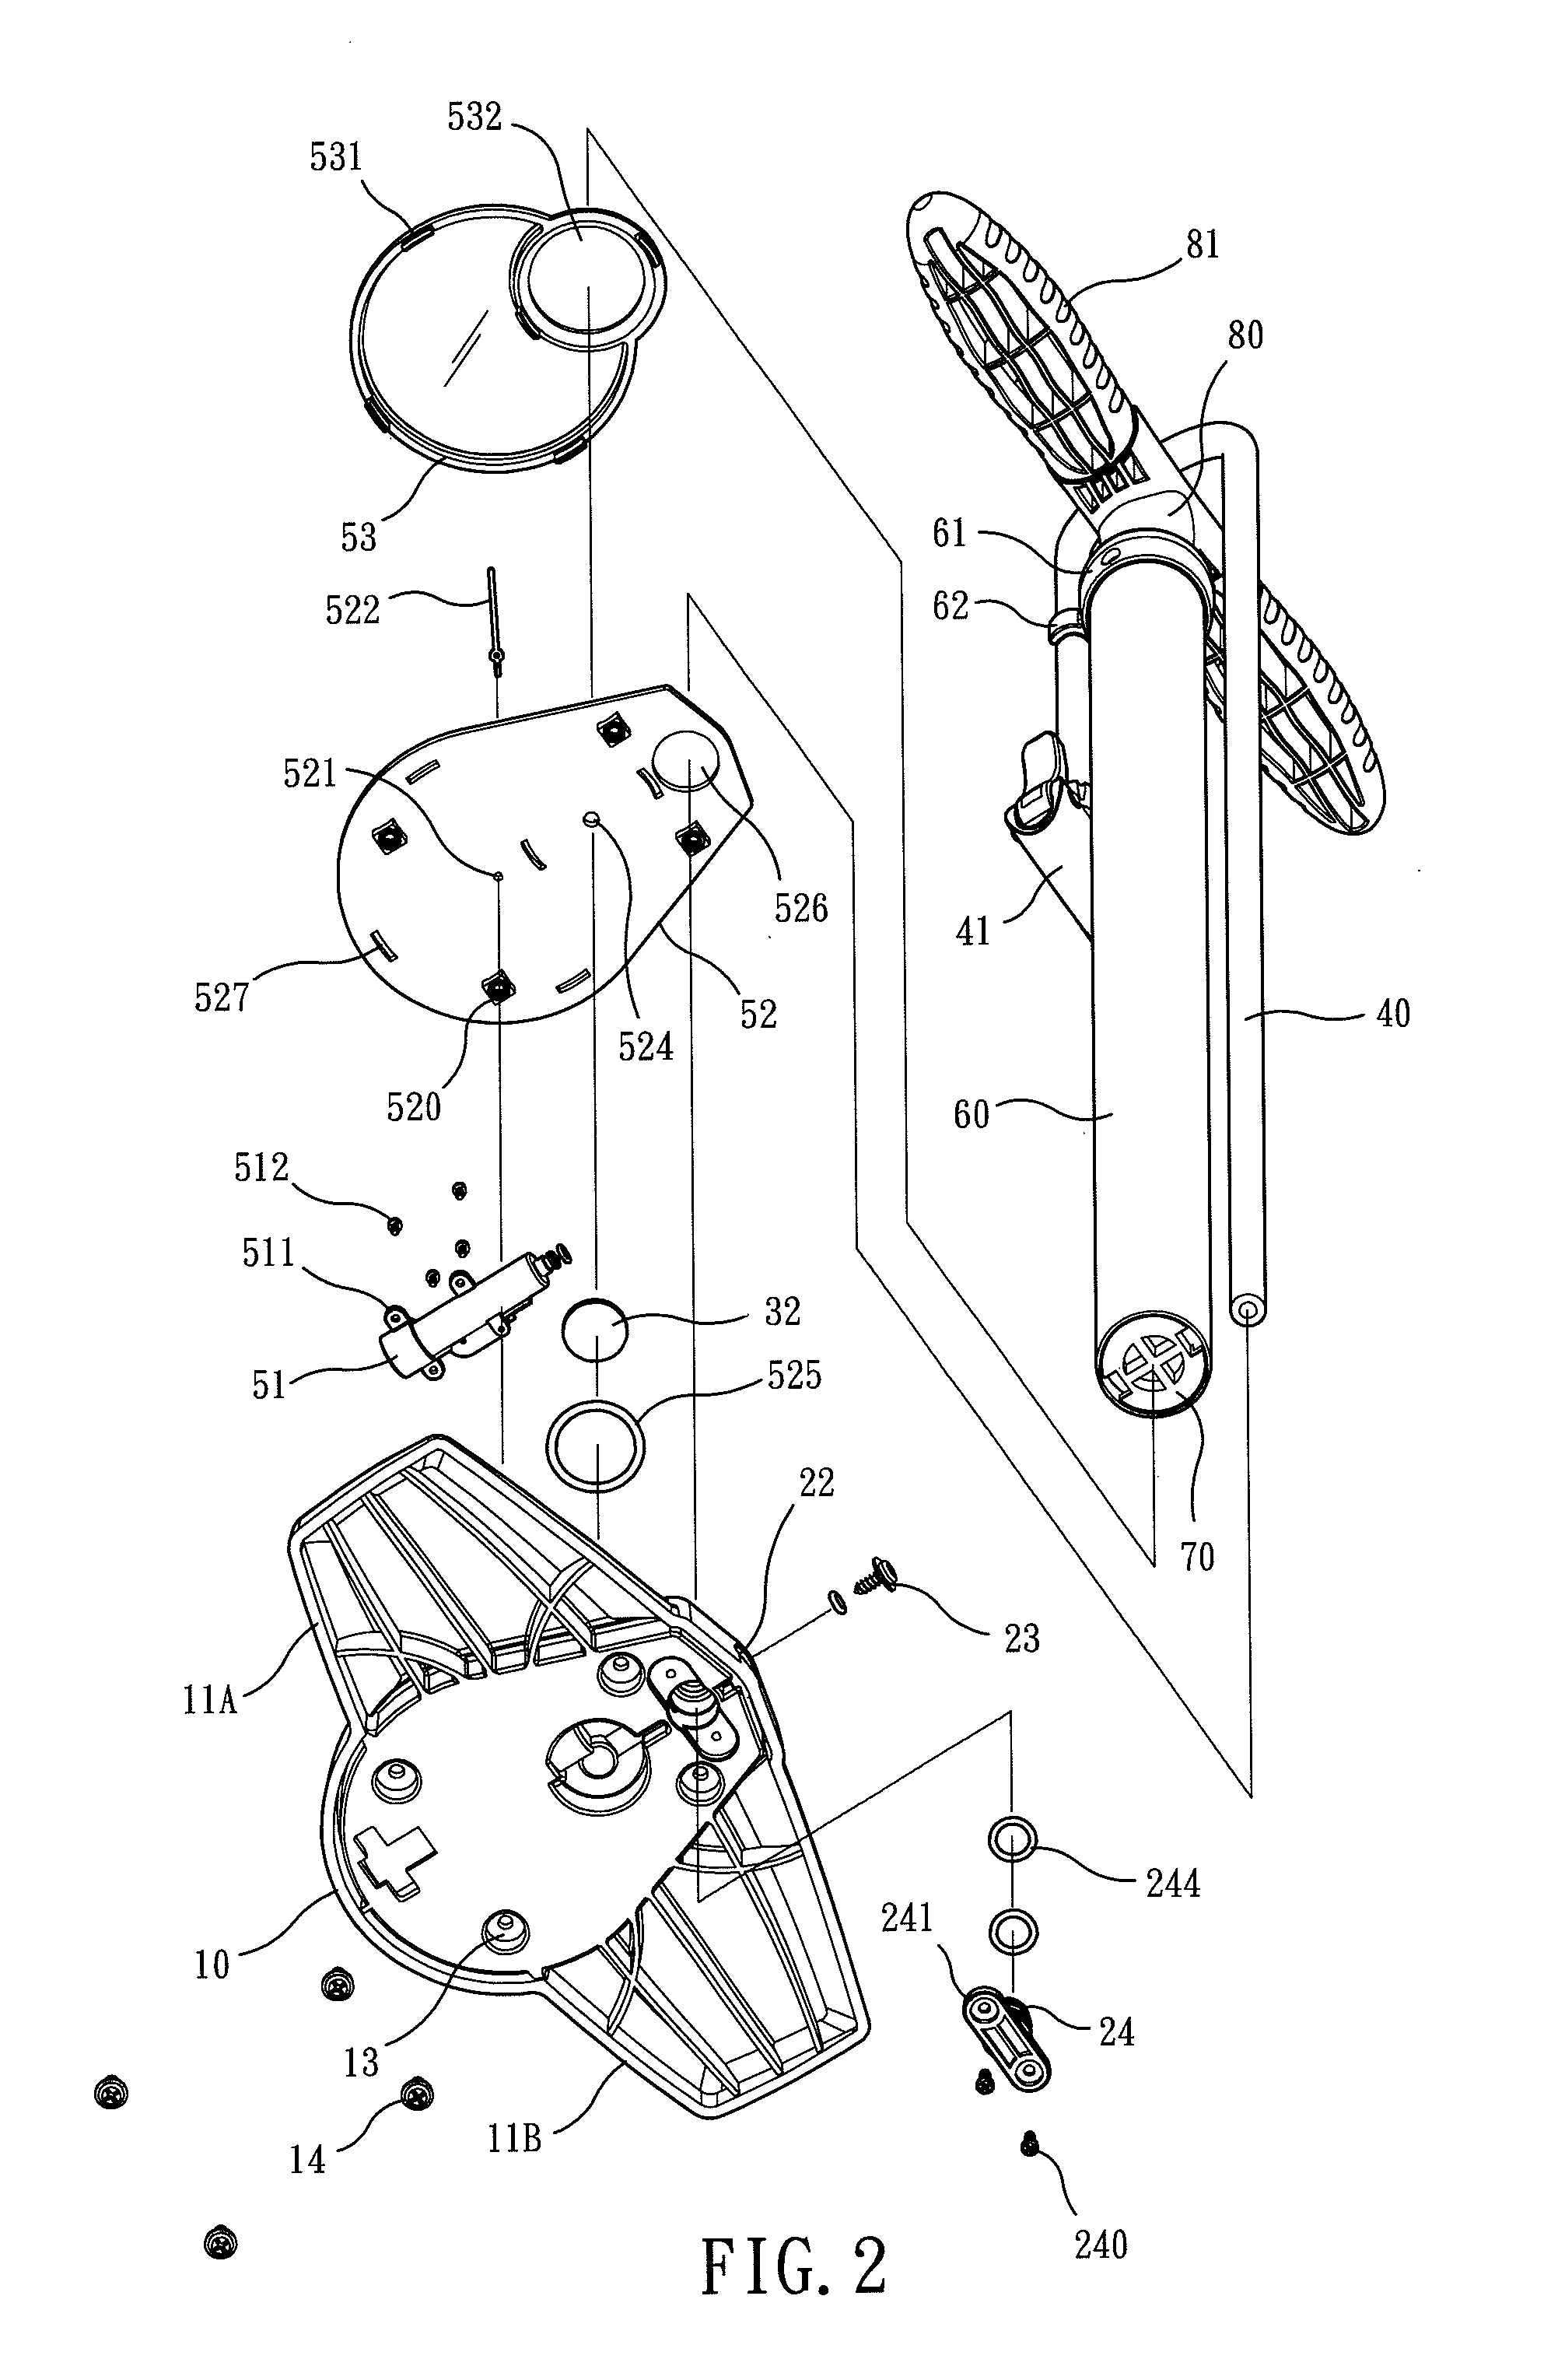 Air pump for measuring an air pressure